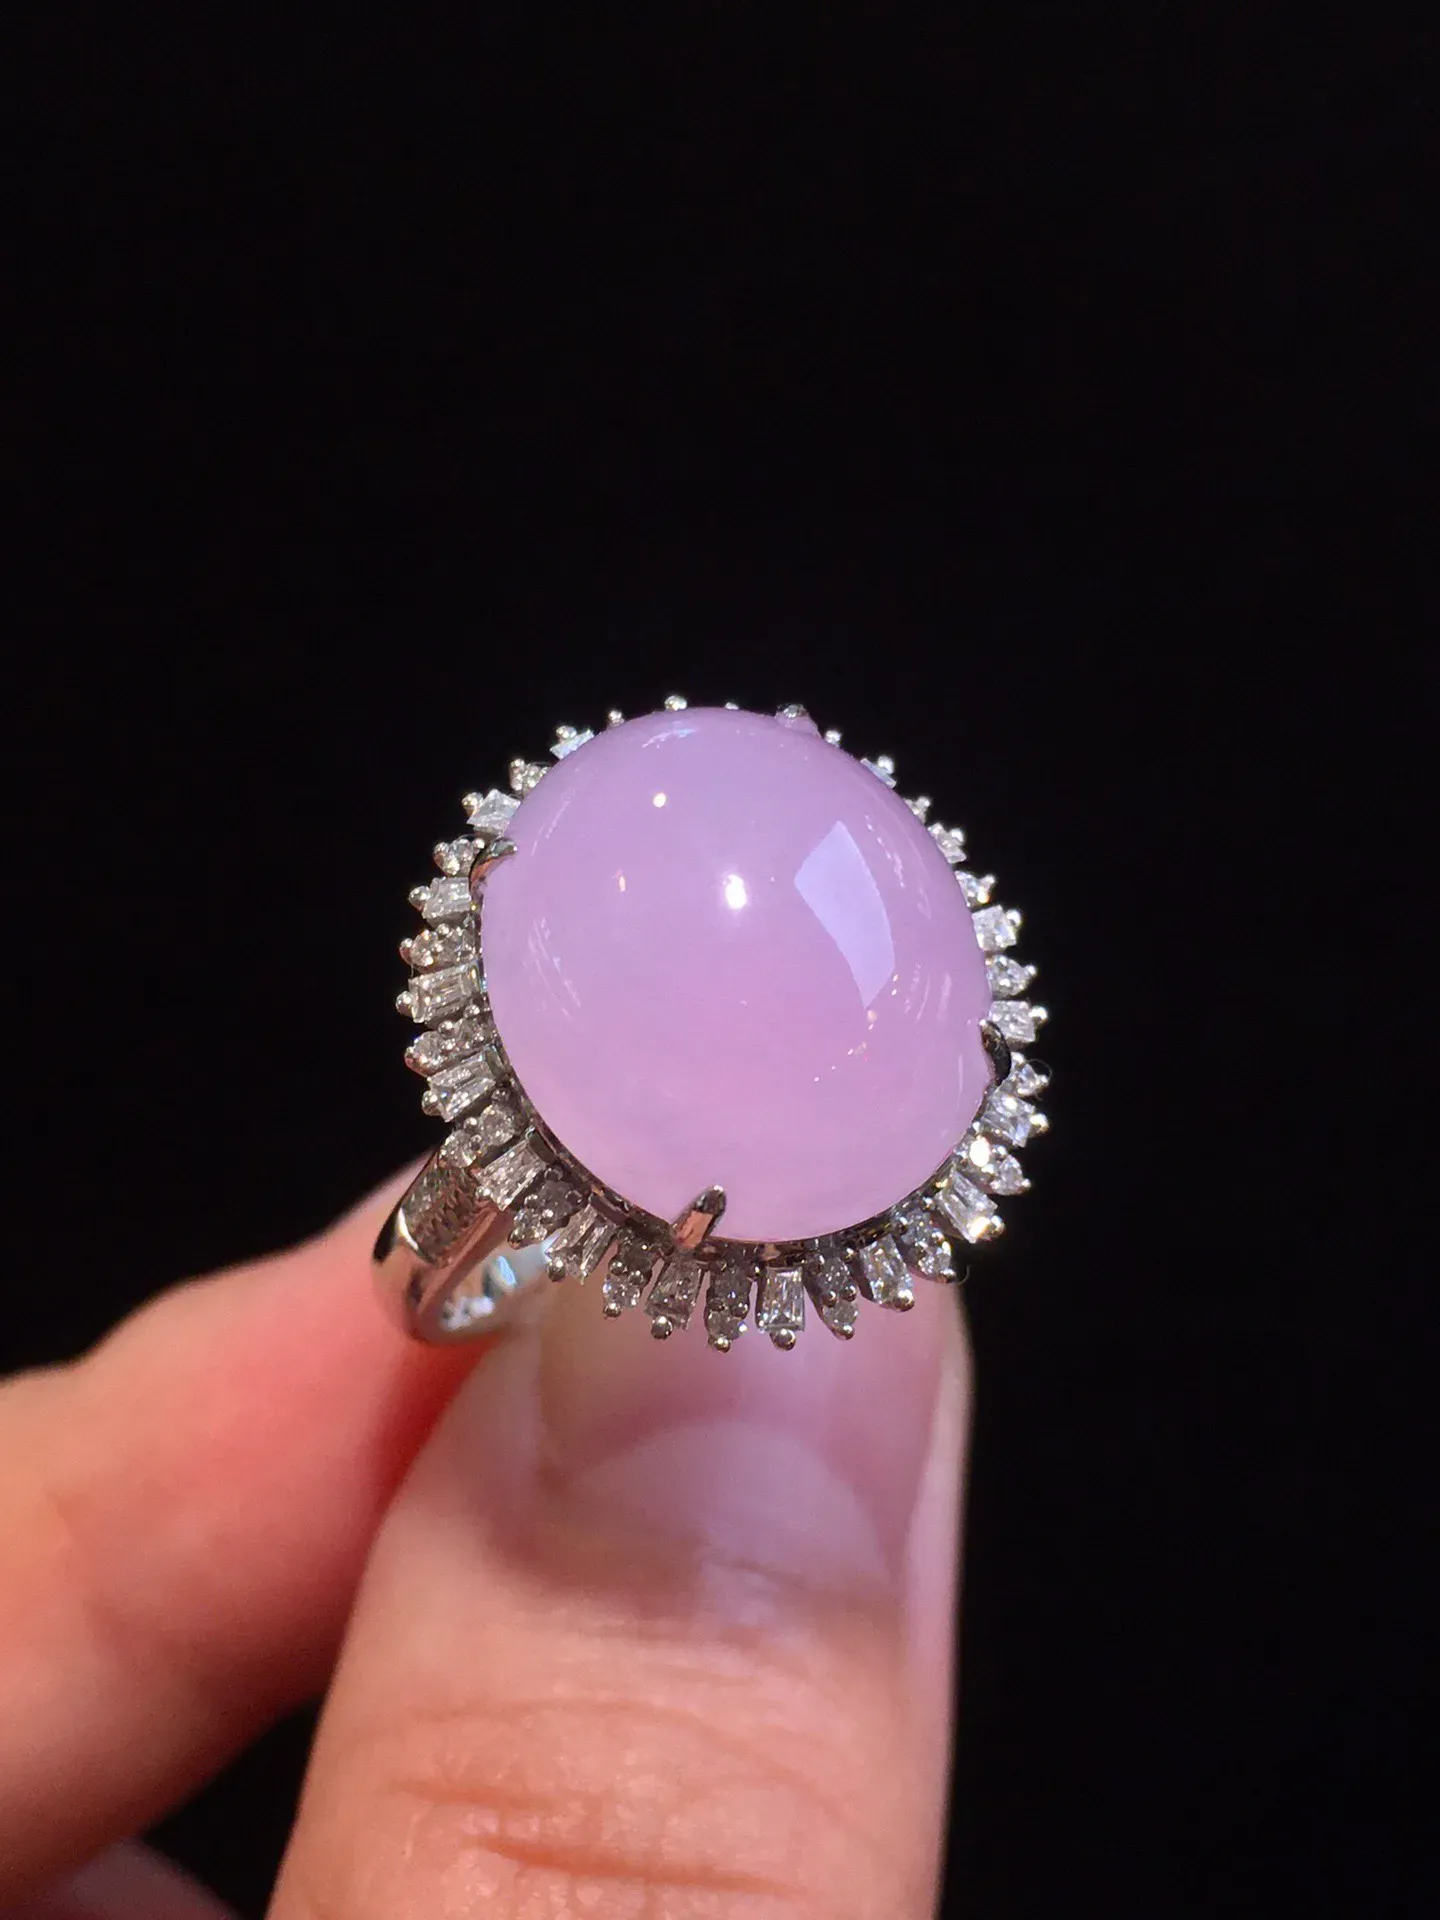 冰粉紫蛋面戒指
粉嫩嫩的 清新灵润
起冰胶感 上手优美大方